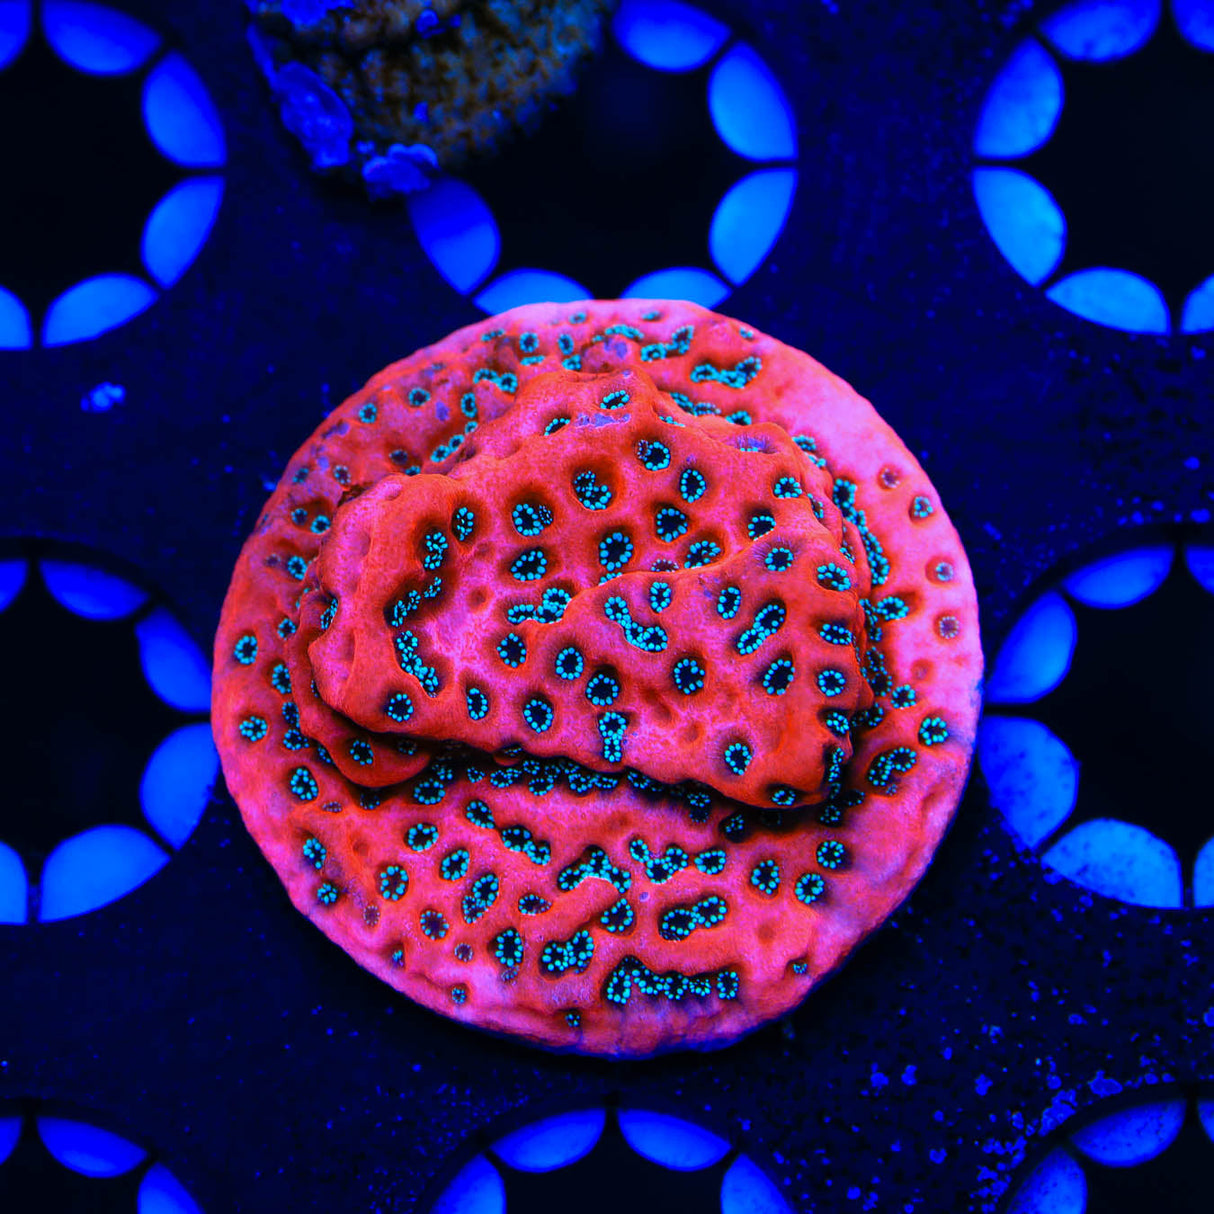 JF Silver Bullet Montipora Coral - Top Shelf Aquatics